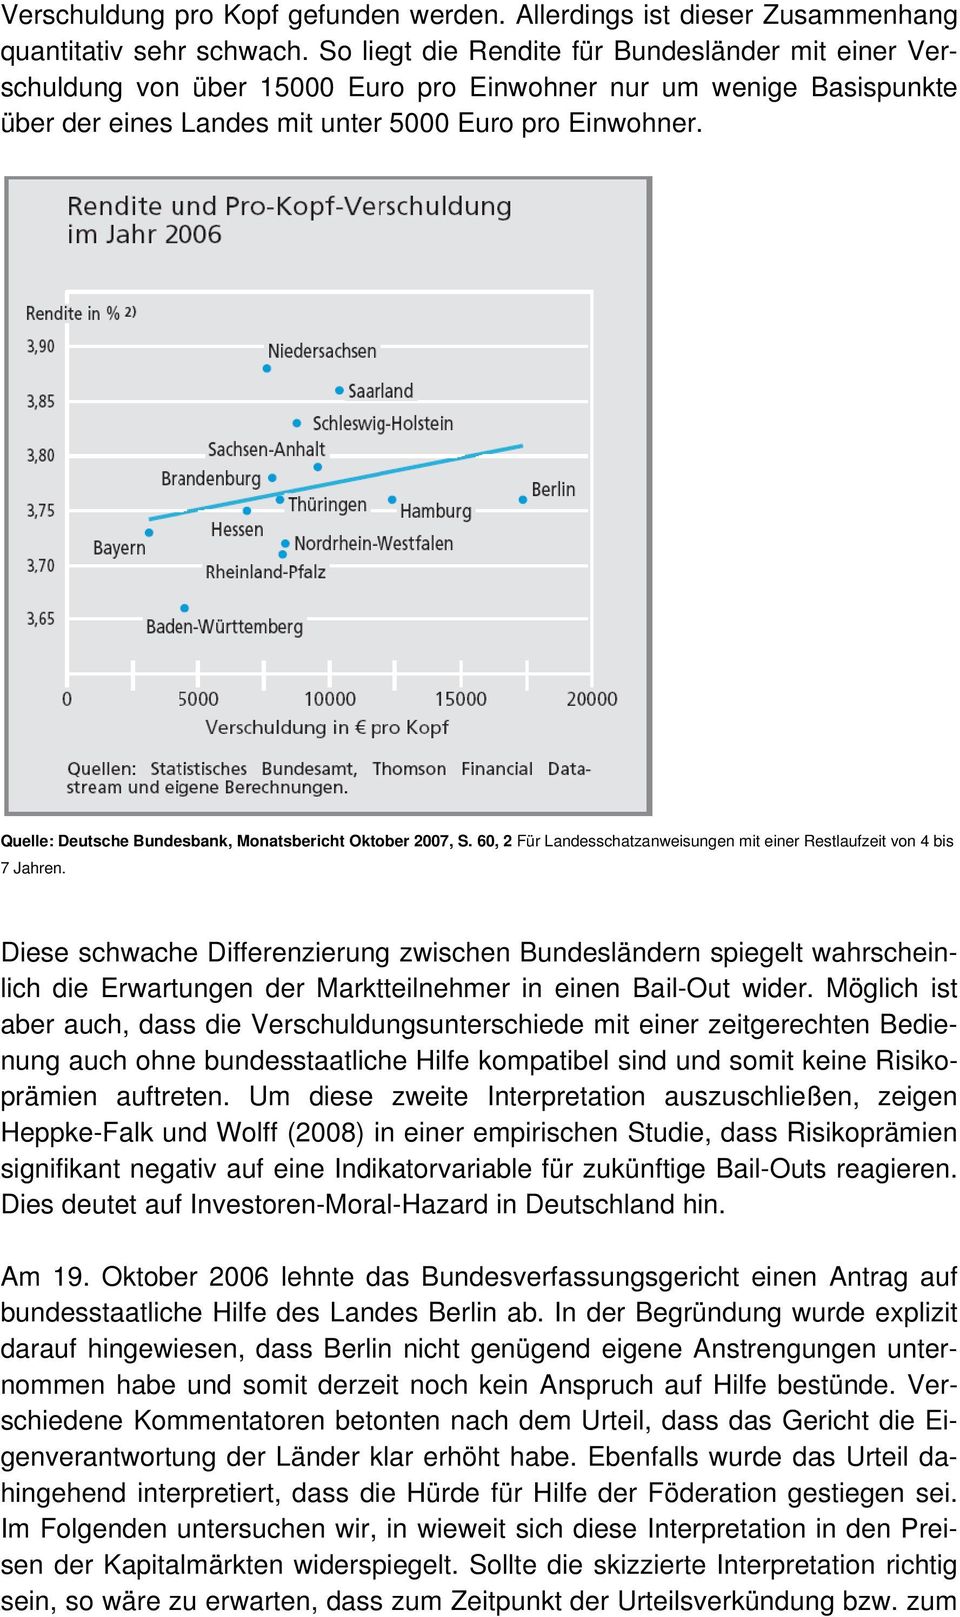 Quelle: Deutsche Bundesbank, Monatsbericht Oktober 2007, S. 60, 2 Für Landesschatzanweisungen mit einer Restlaufzeit von 4 bis 7 Jahren.